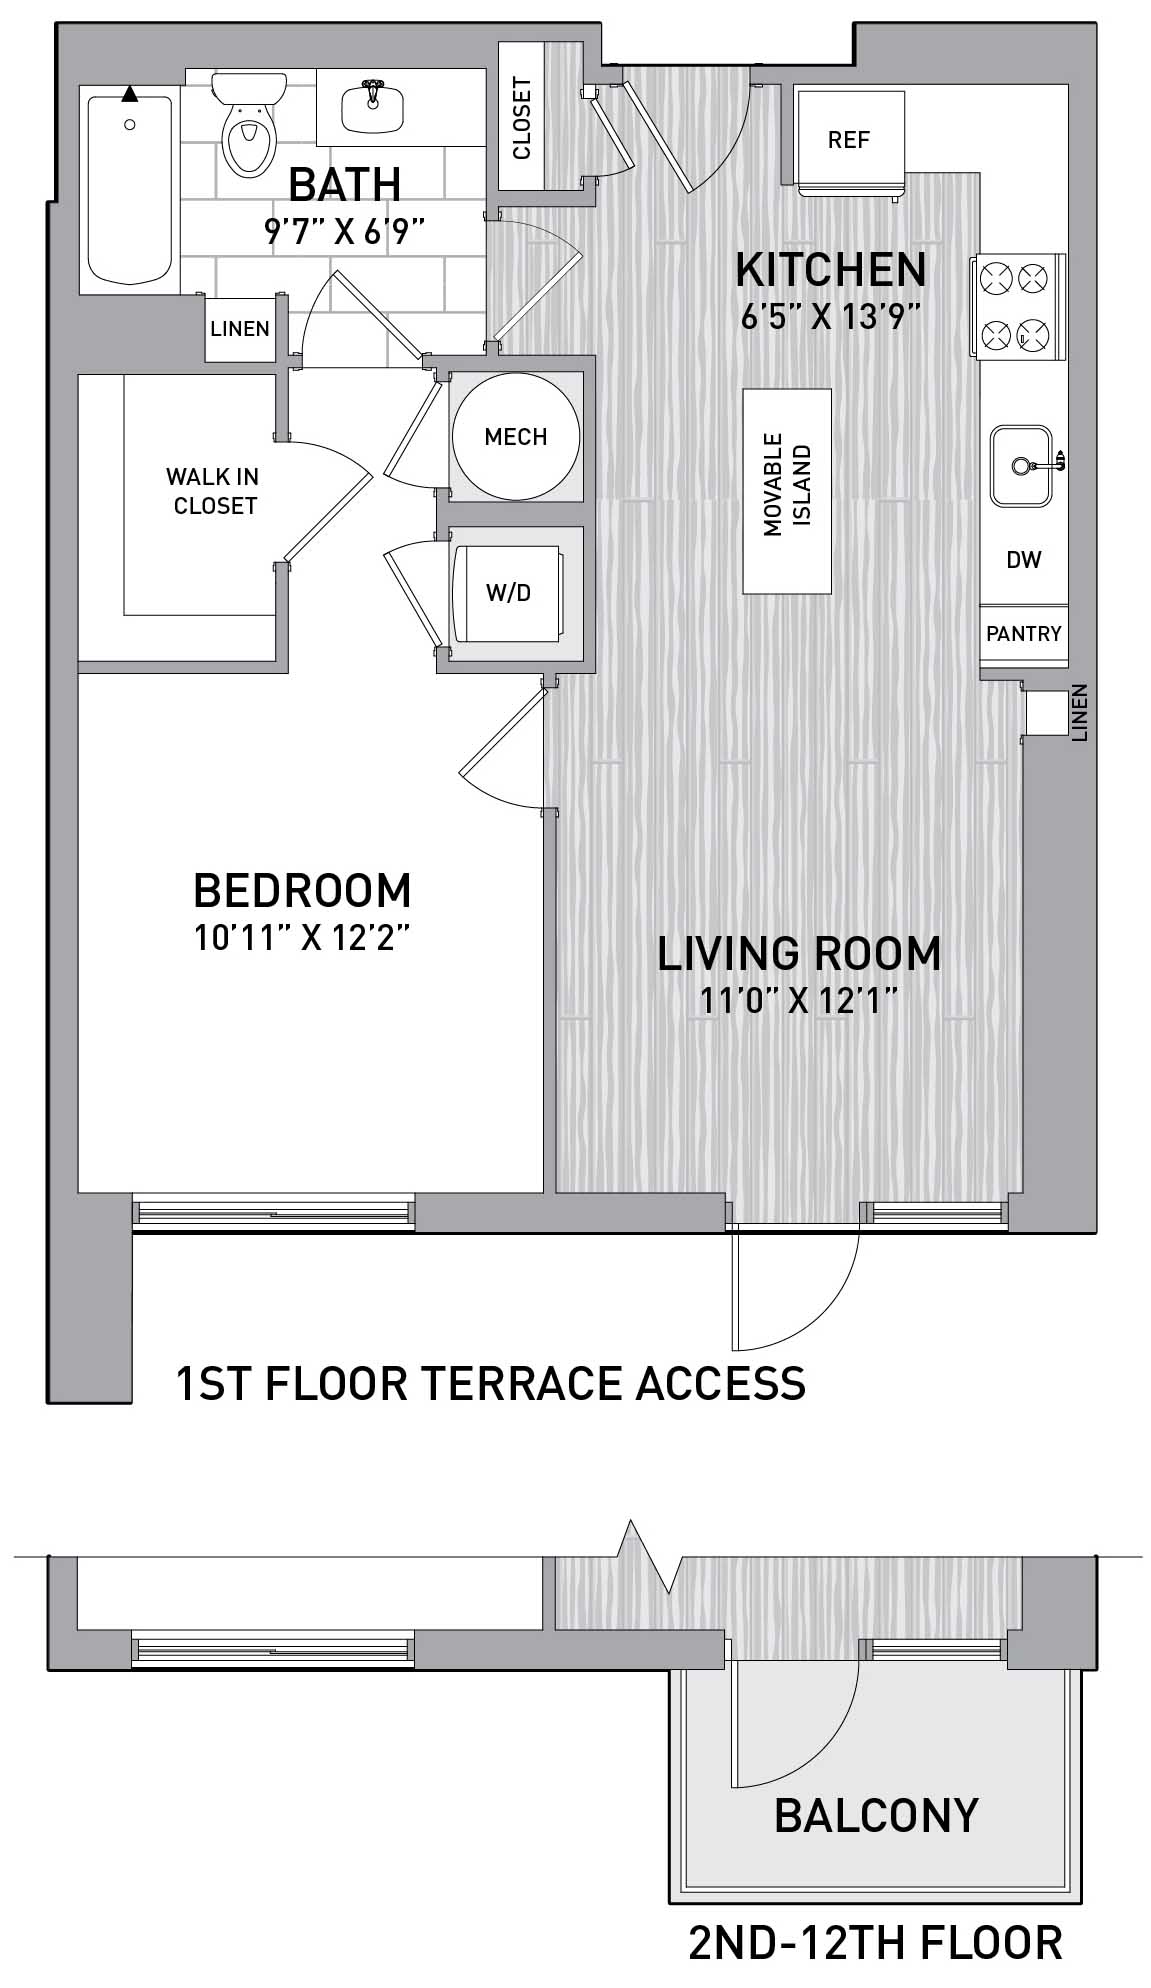 Floorplan Image of unit 151-1008